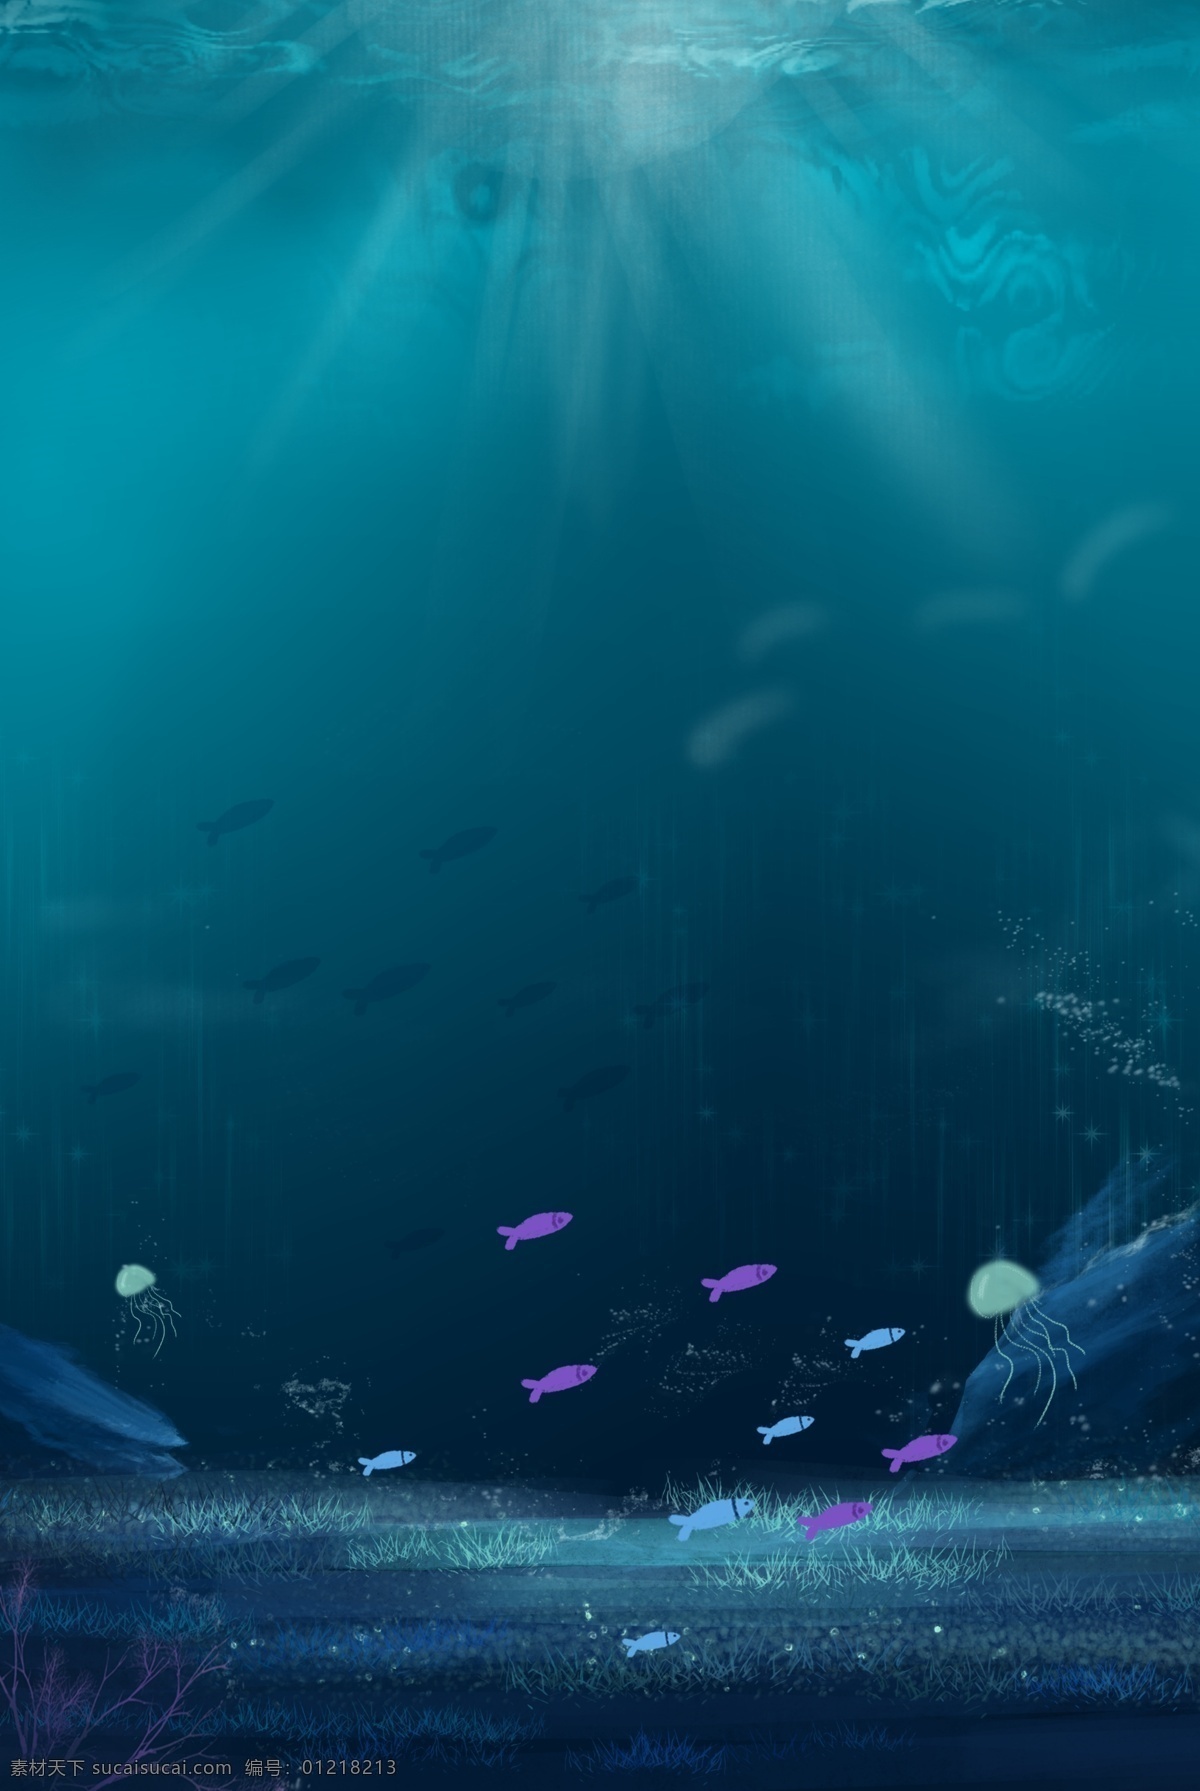 海洋世界 蓝色 海底 分层 banner 卡通 水母 手绘 夏天 鱼 海草 珊瑚 气泡 创意合成